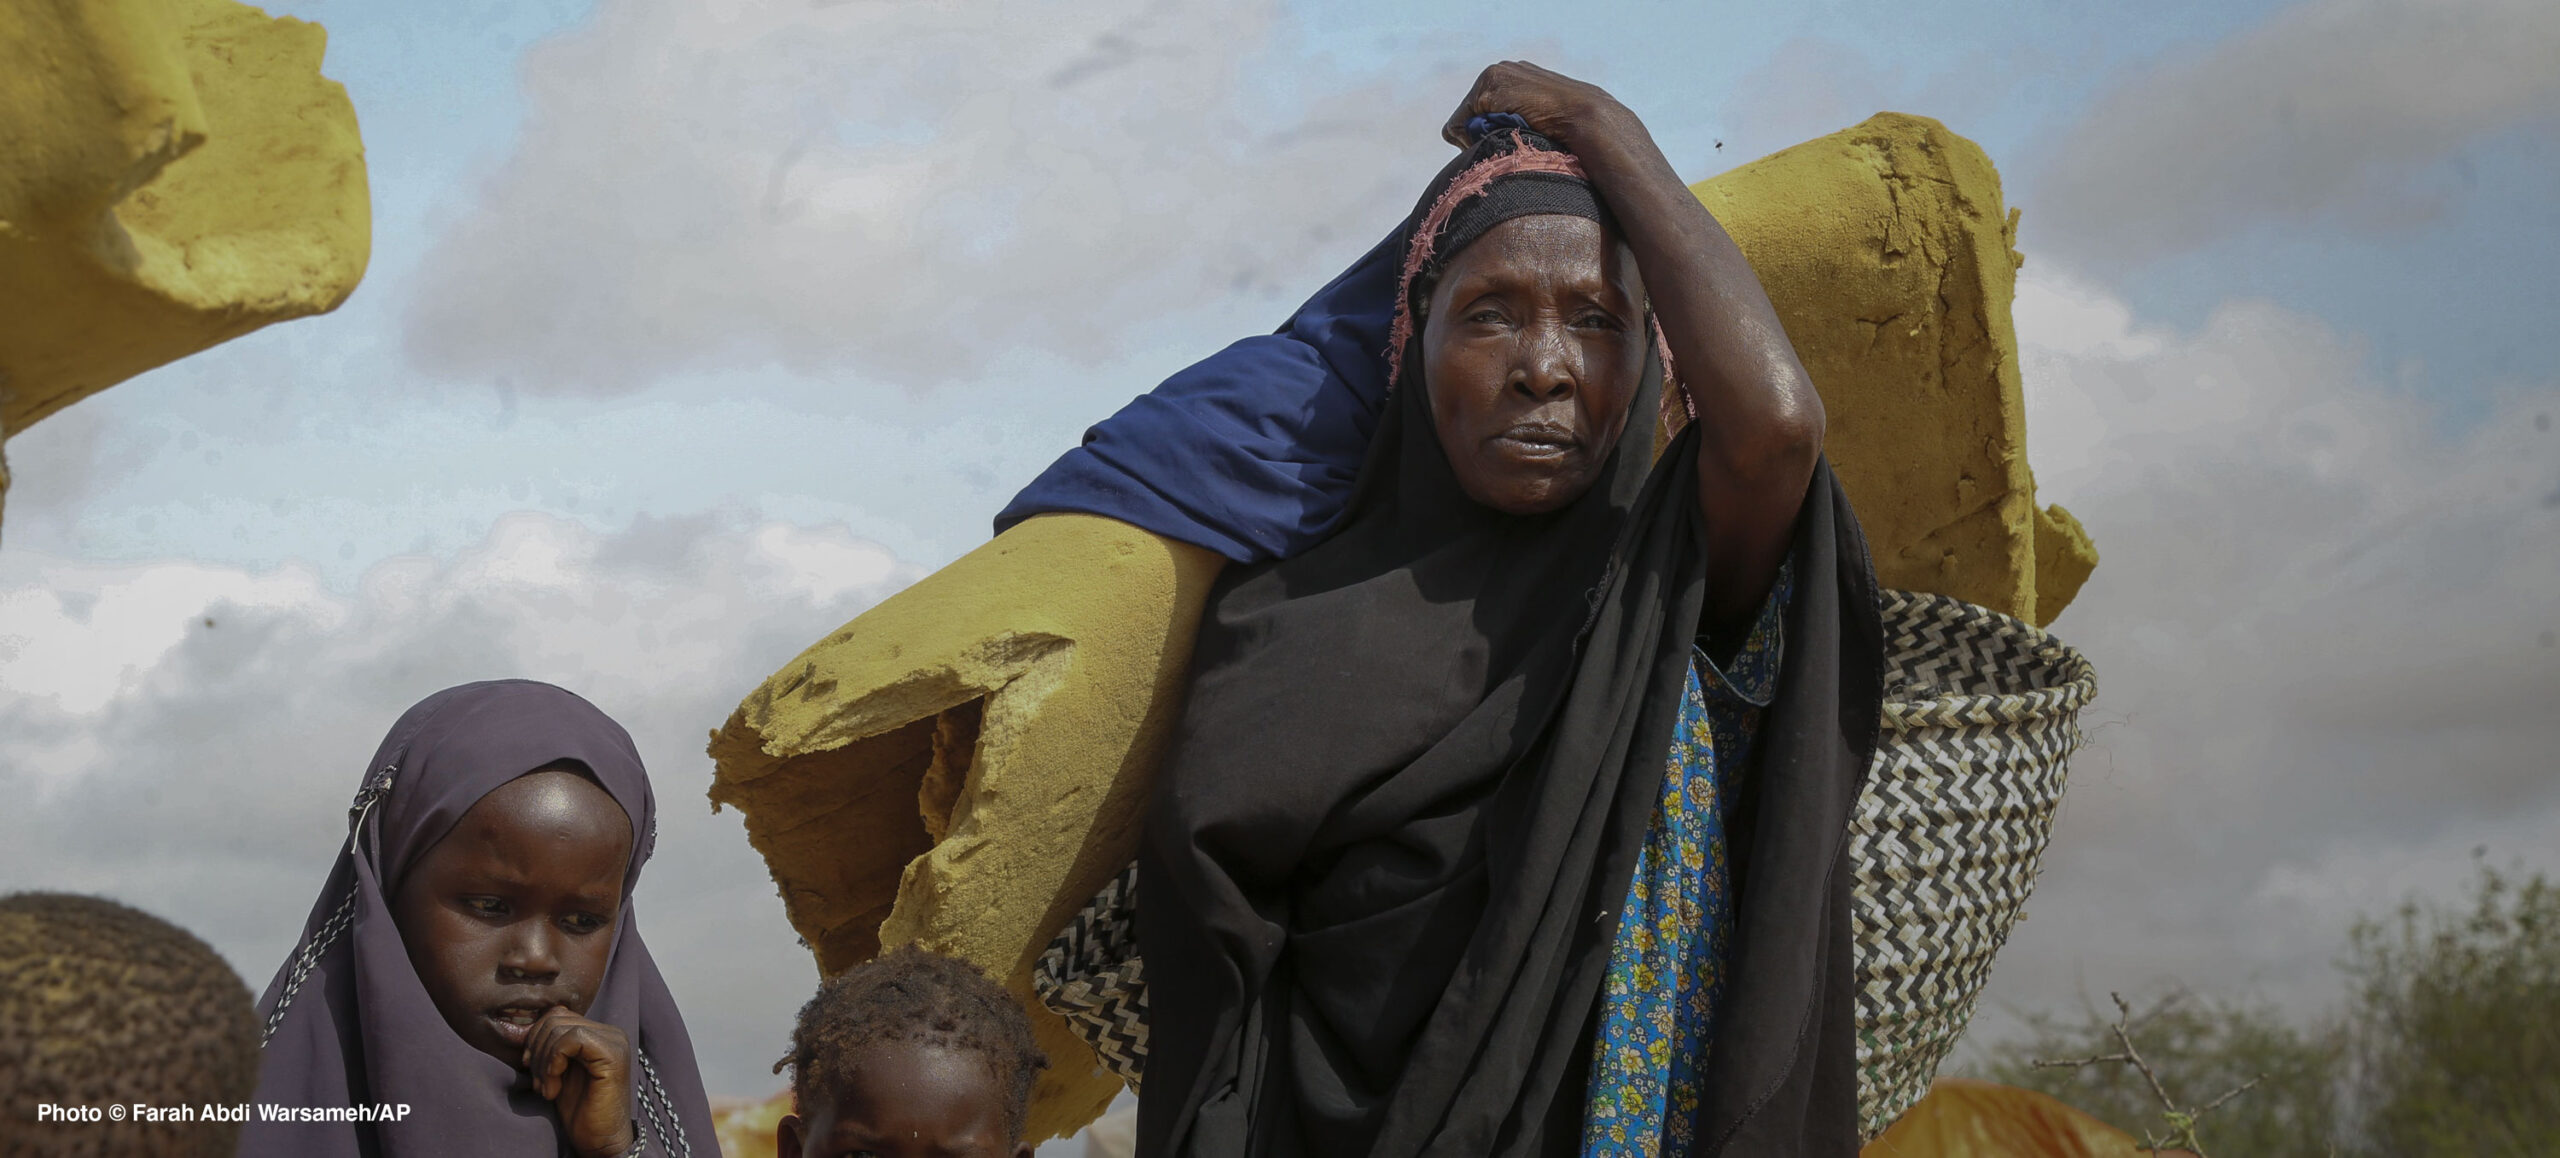 Photo Farah Abdi Warsameh/AP